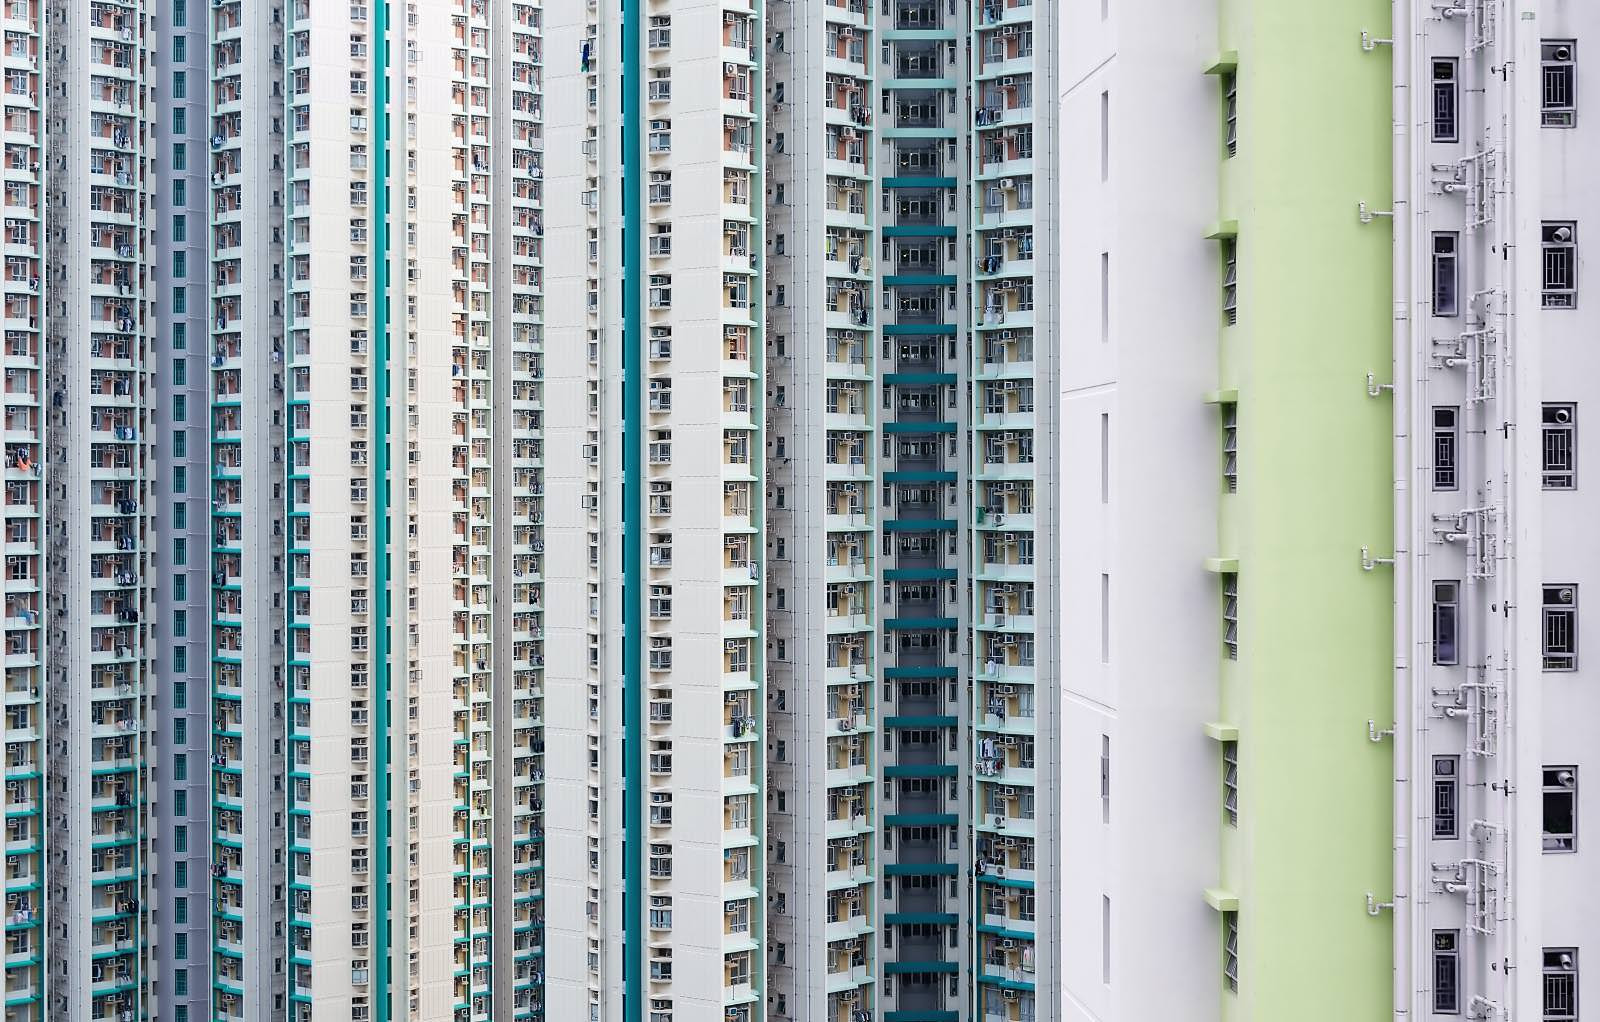 Fassade in Hong Kong bei Tag